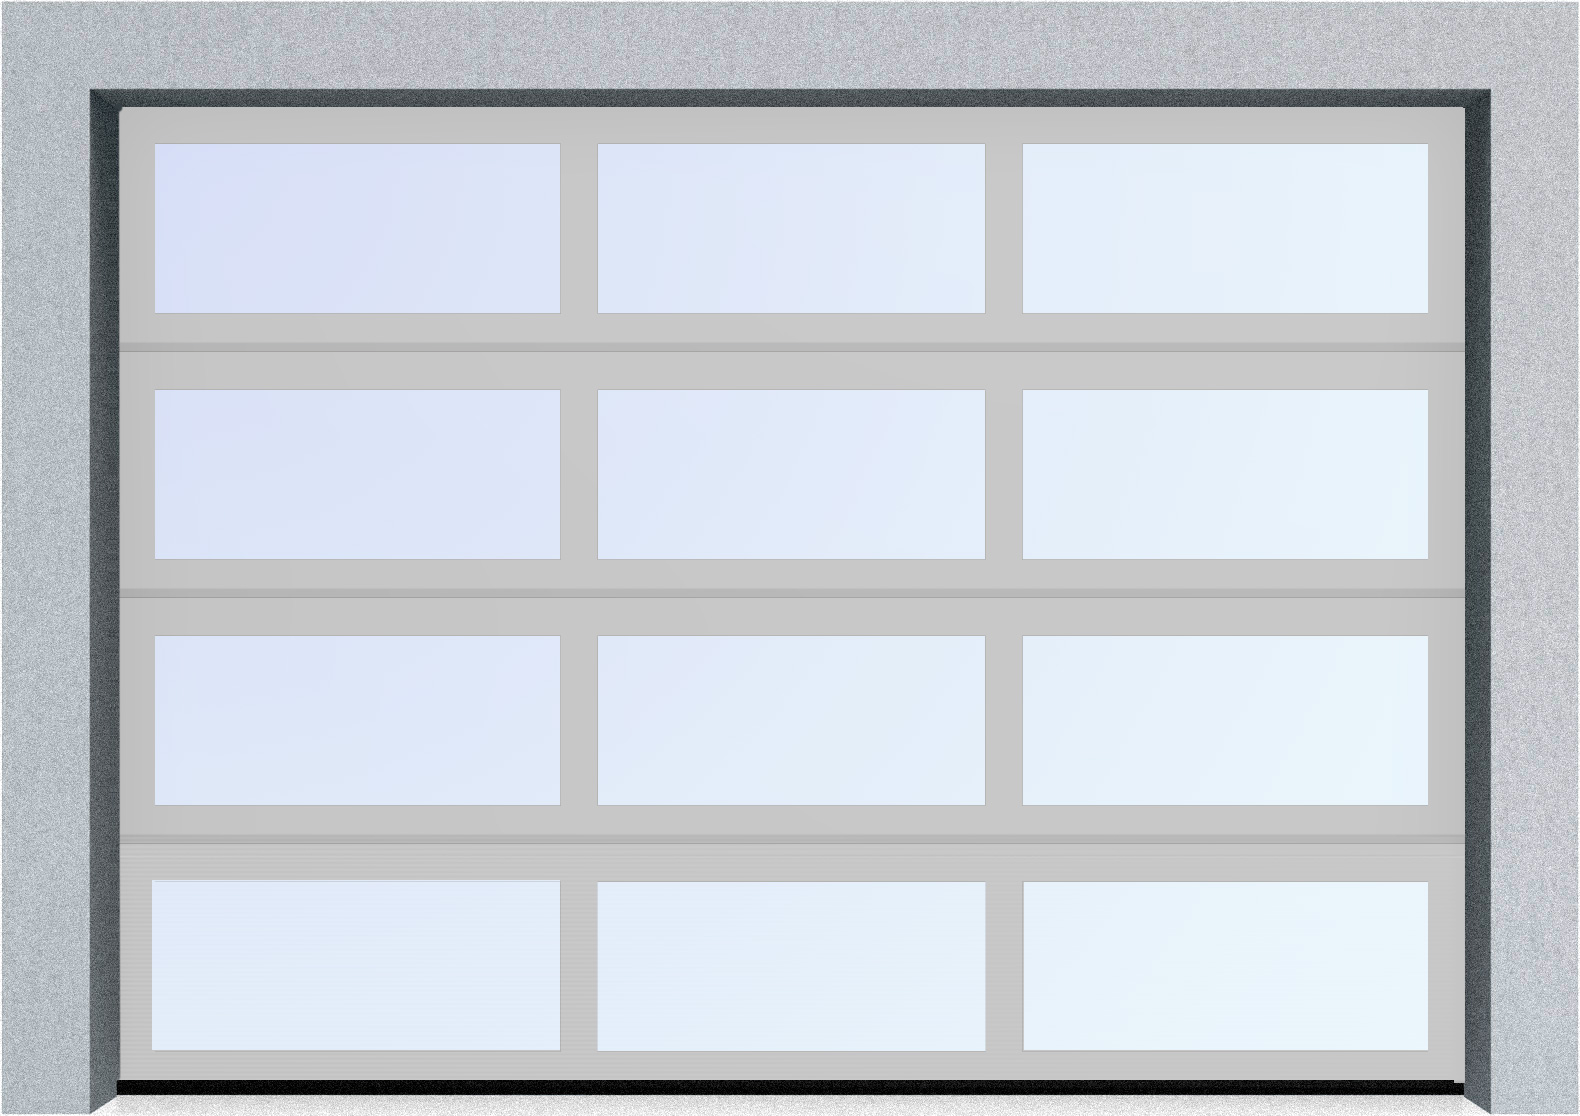  Секционные панорамные ворота серии AluTrend (АЛП) 2375х2500 нижняя панель стандартные цвета, фото 8 